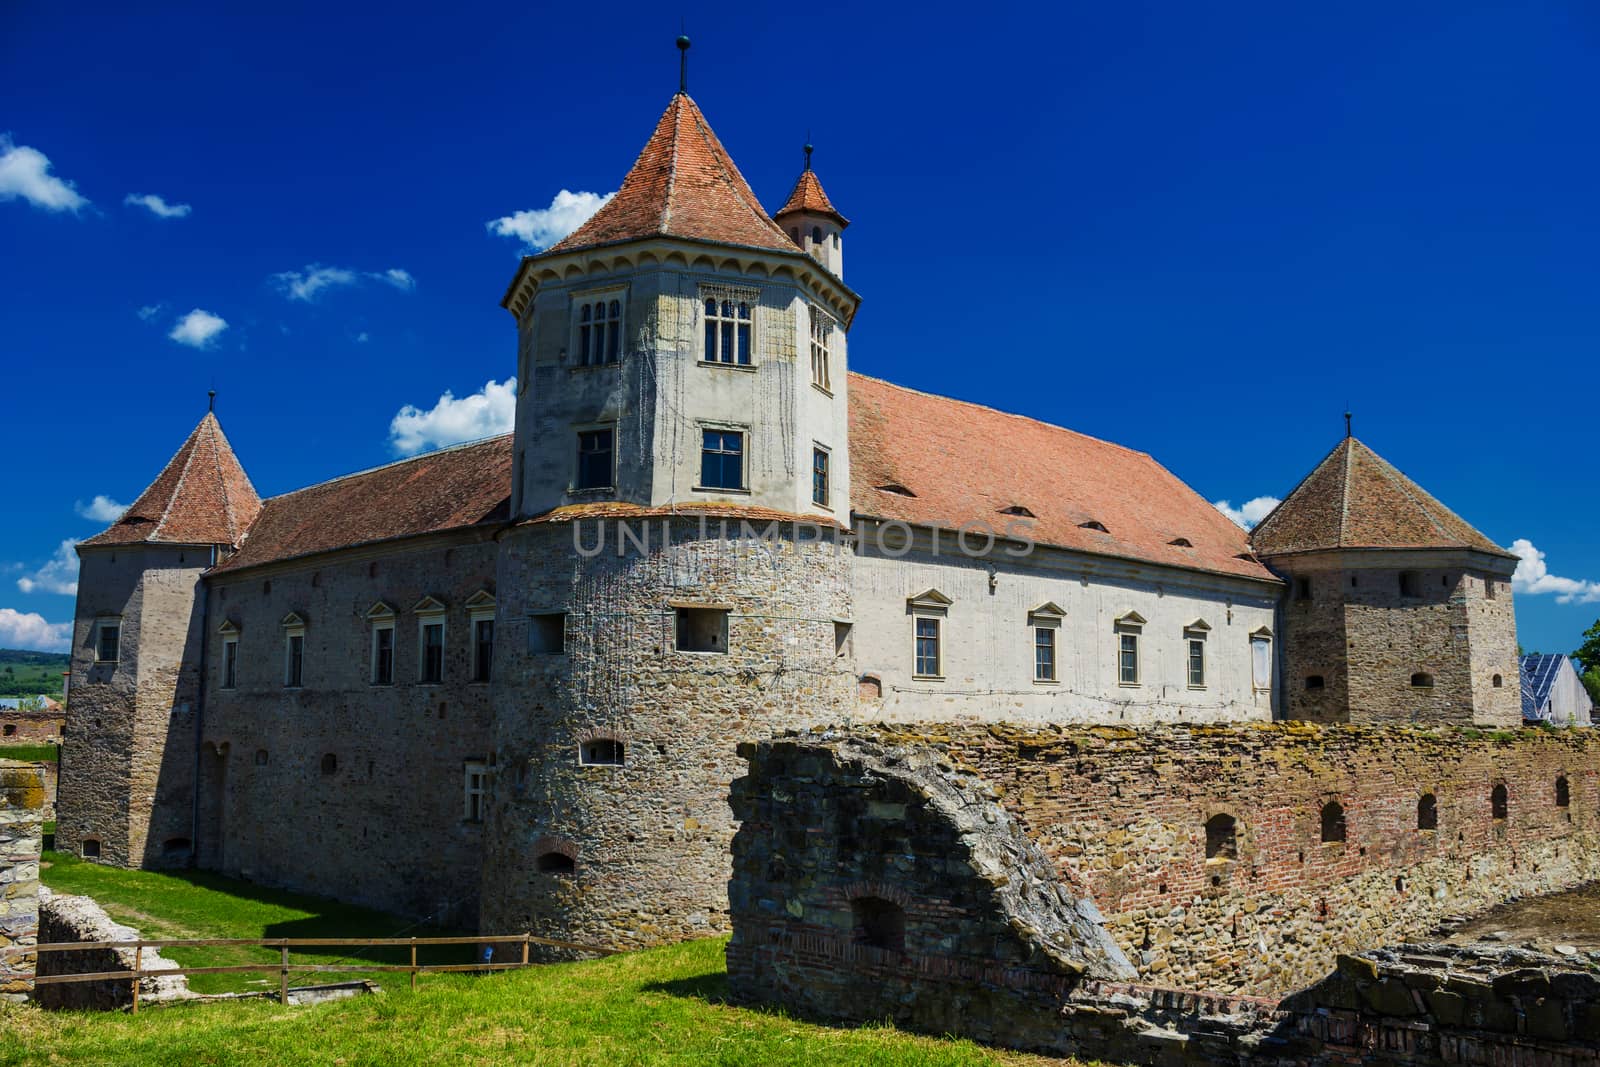 Fagaras fortress and castle - Fagaras, Romania, Transylvania by maggee